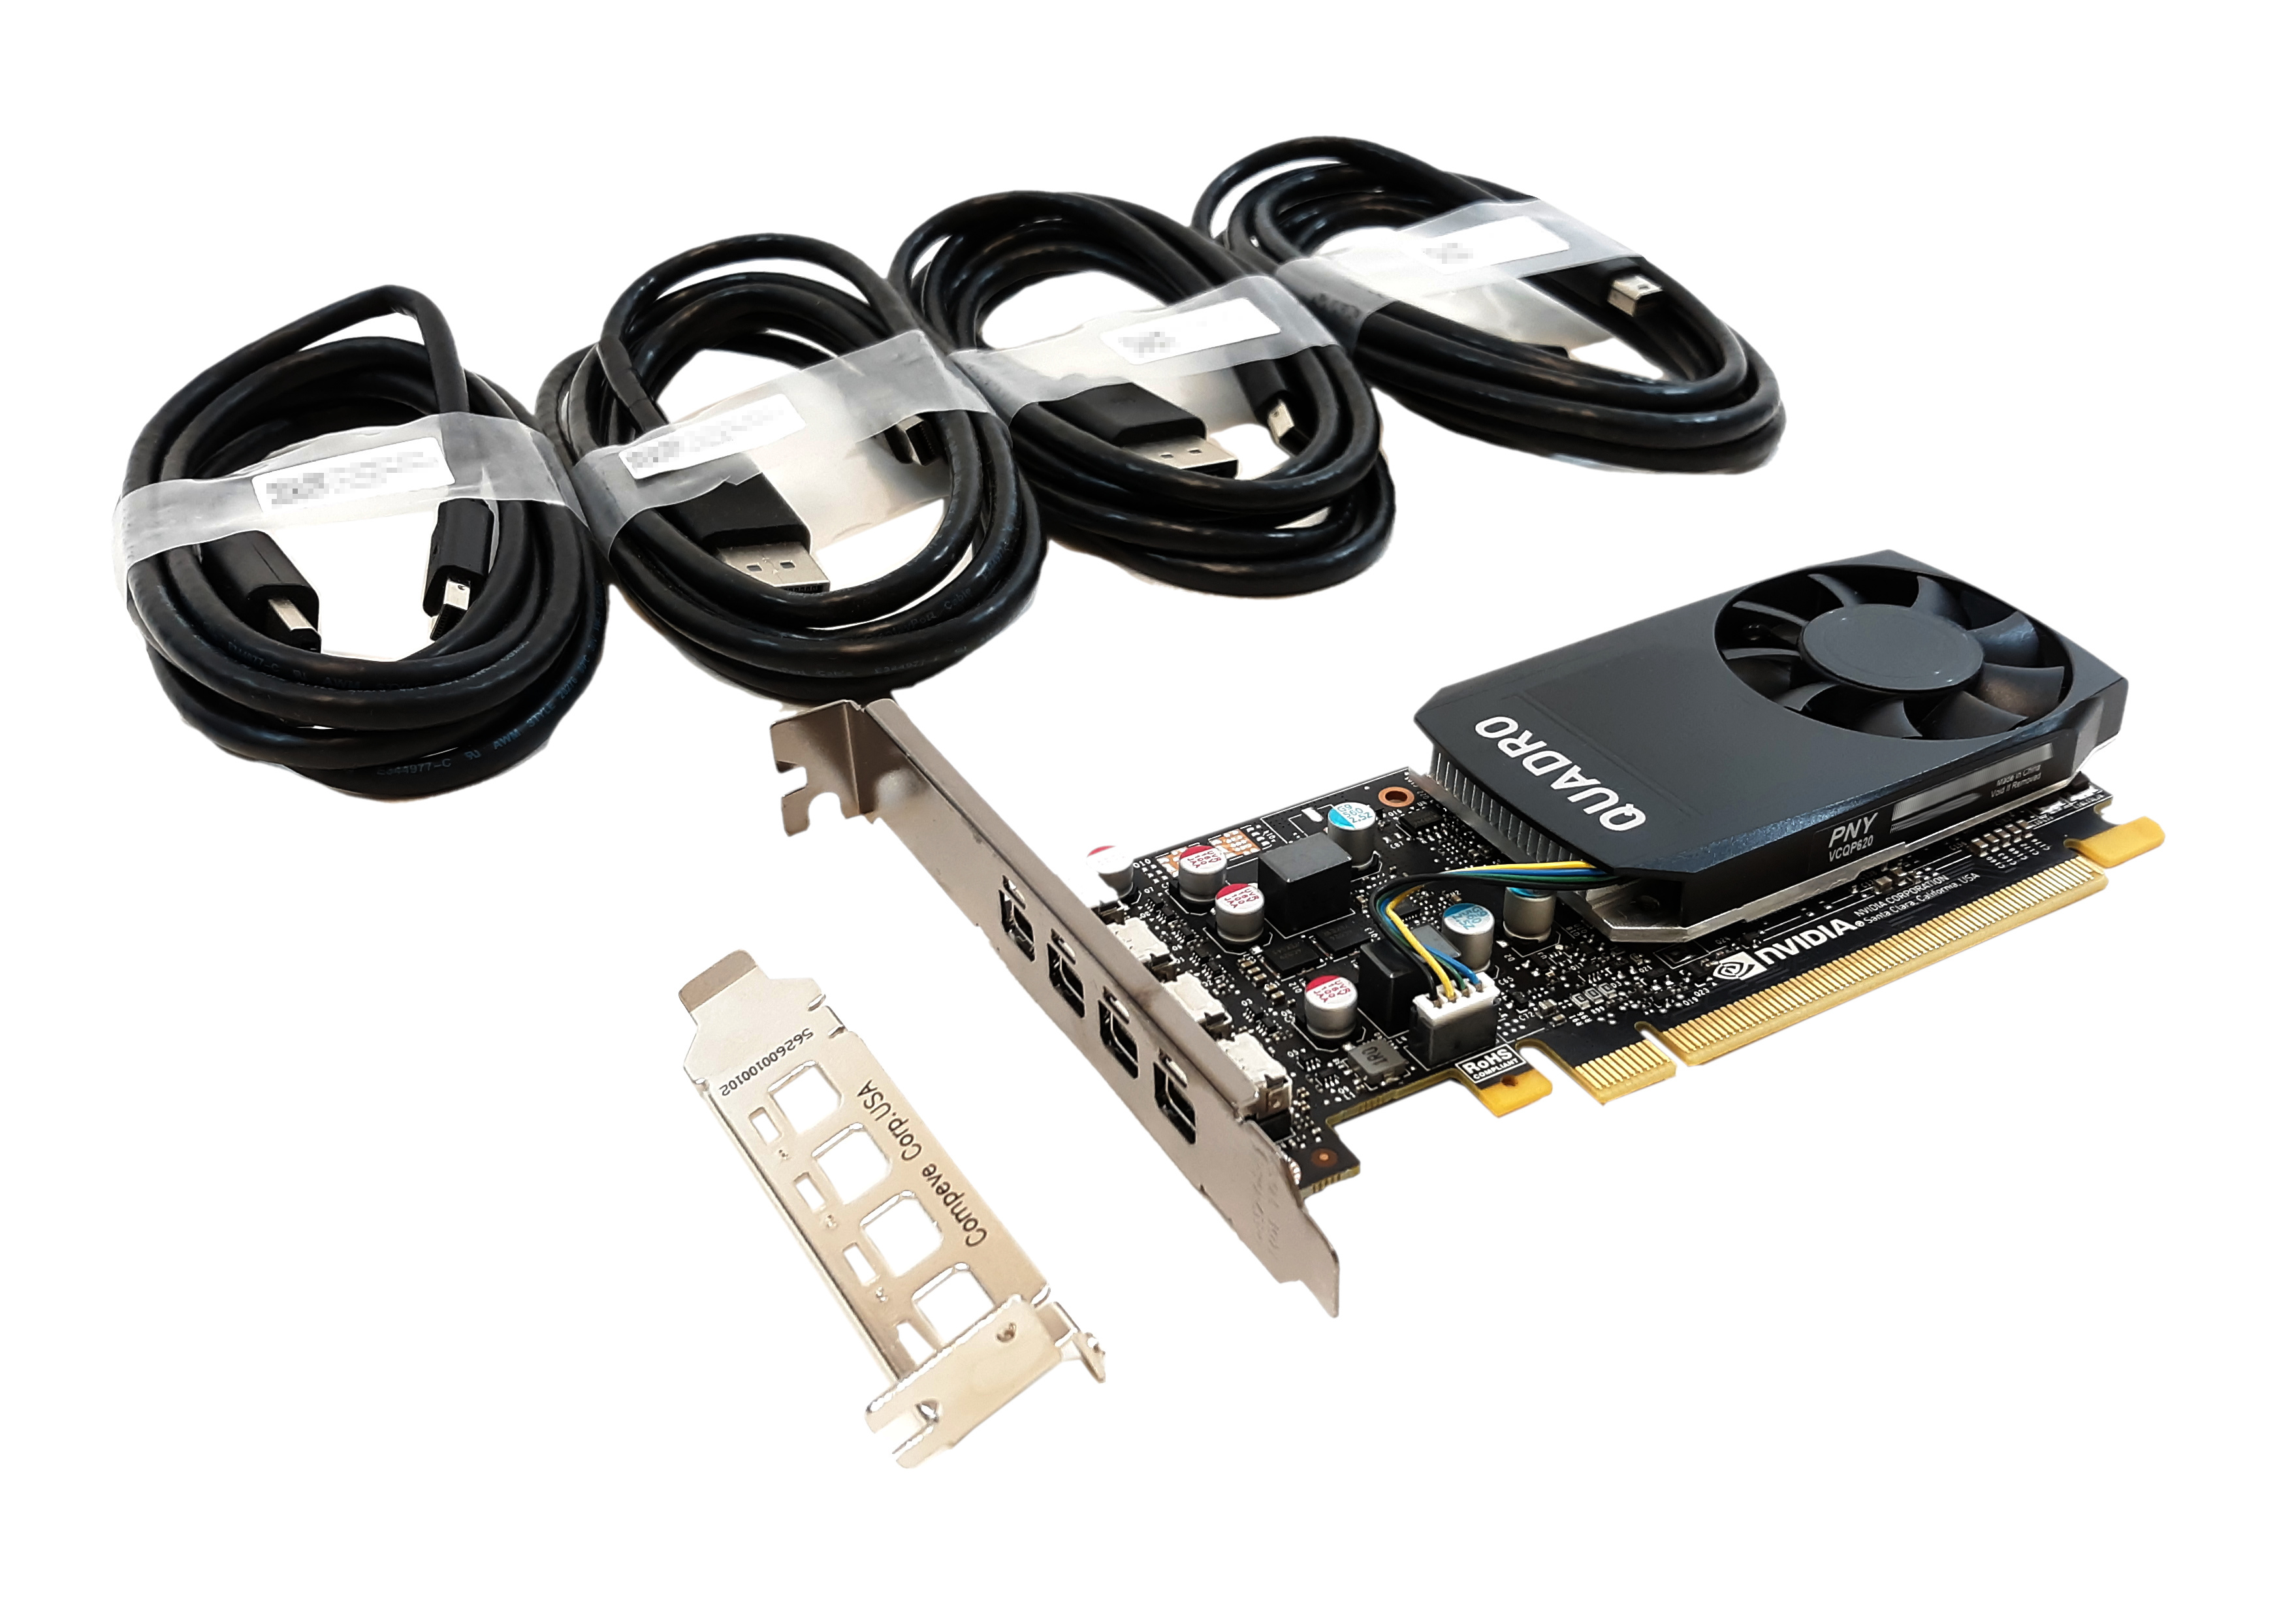 PNY VCQP620 nVIDIA Quadro P620 2GB GDDR5 PCI-E x16 4x miniDP 900-5G212-1741-000